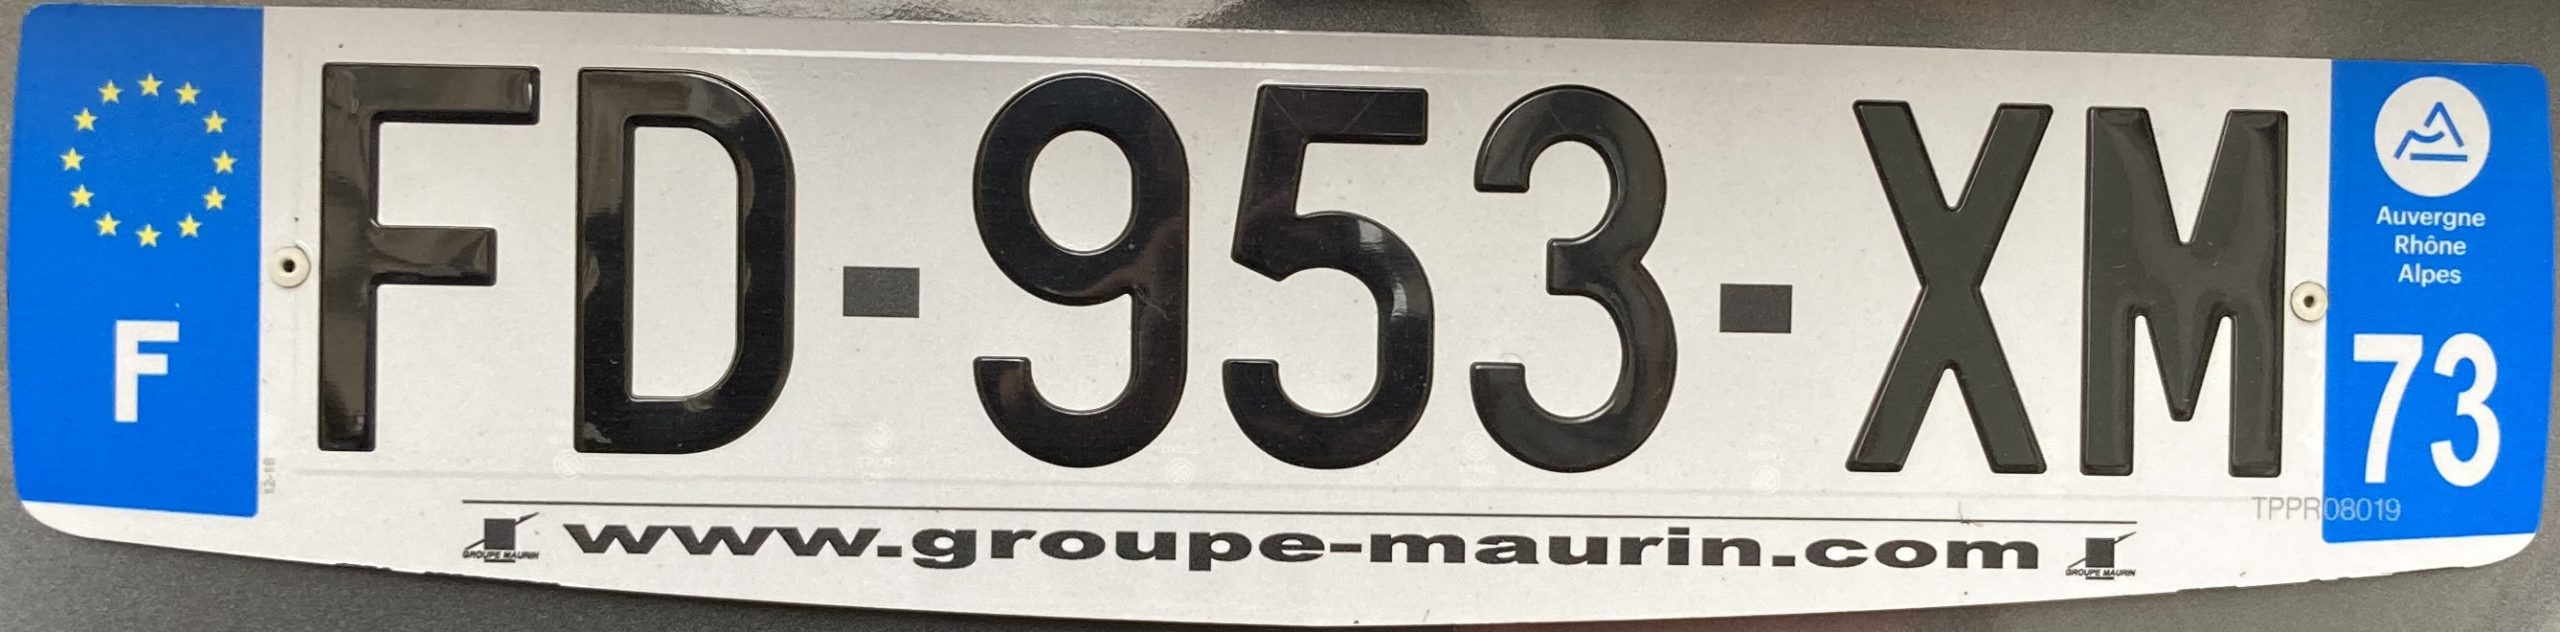 Francouzská registrační značka – 73 - Savoie, foto: www.podalnici.cz